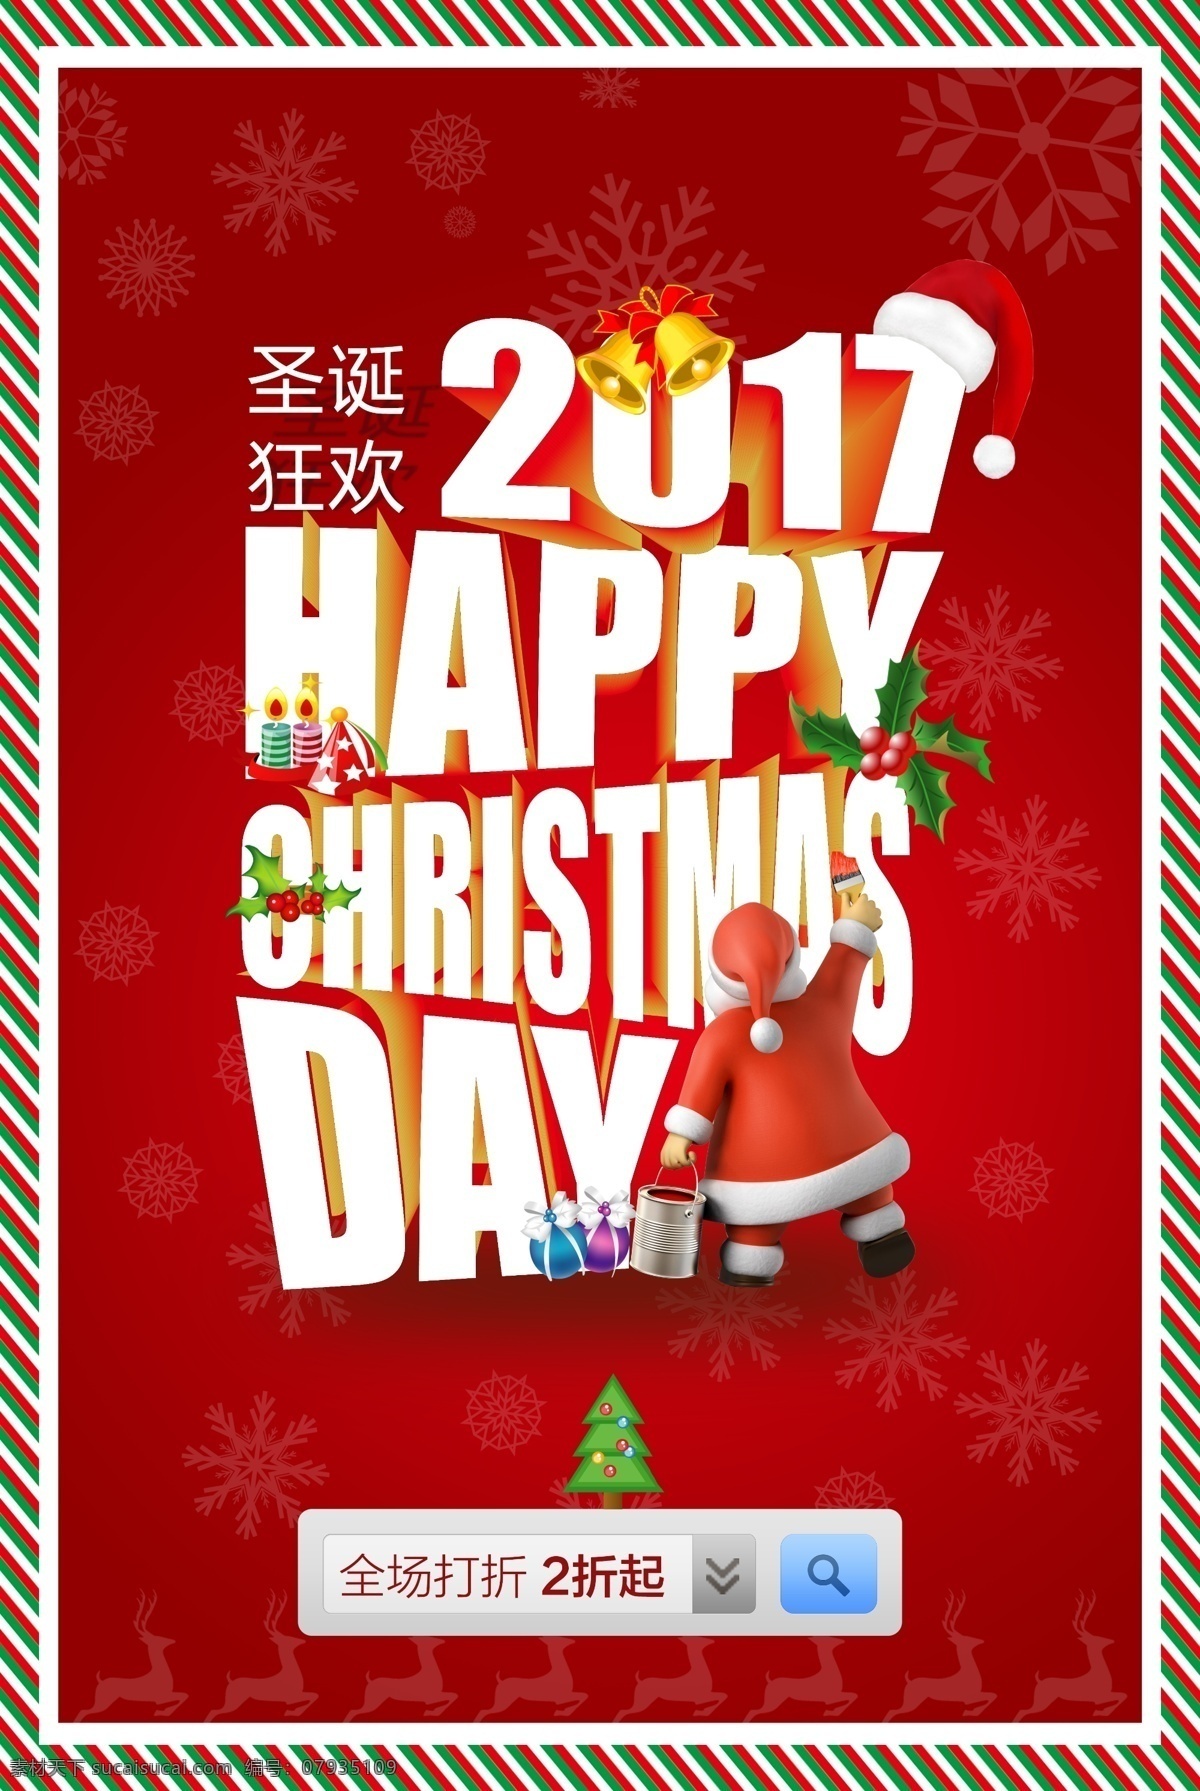 2017 圣诞 红色 圣诞老人 喜庆 促销 海报 全场打折 圣诞节 圣诞海报 红色海报 年 红色促销